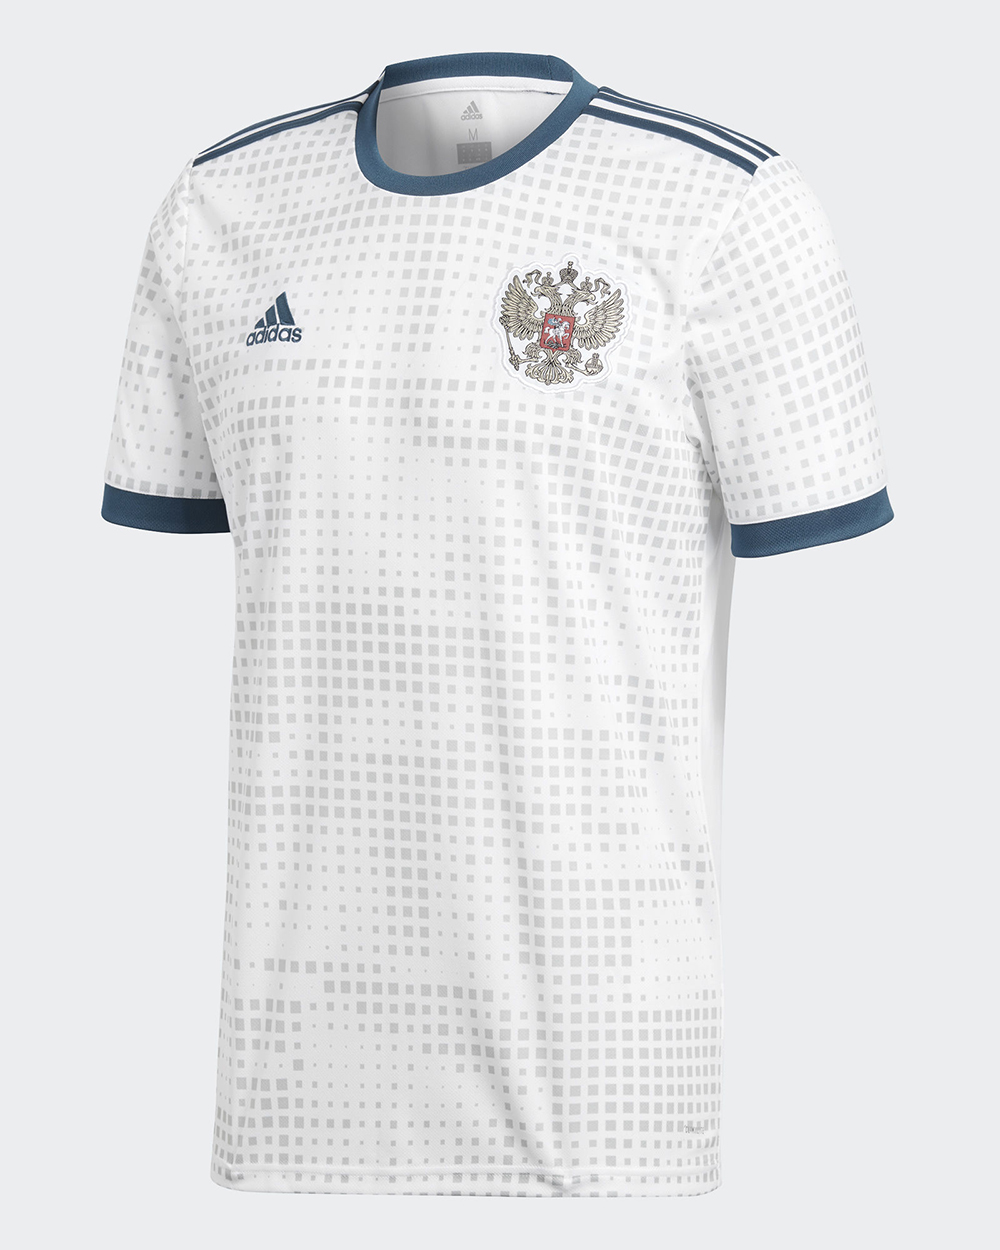 Camiseta alternativa adidas de Rusia Mundial 2018